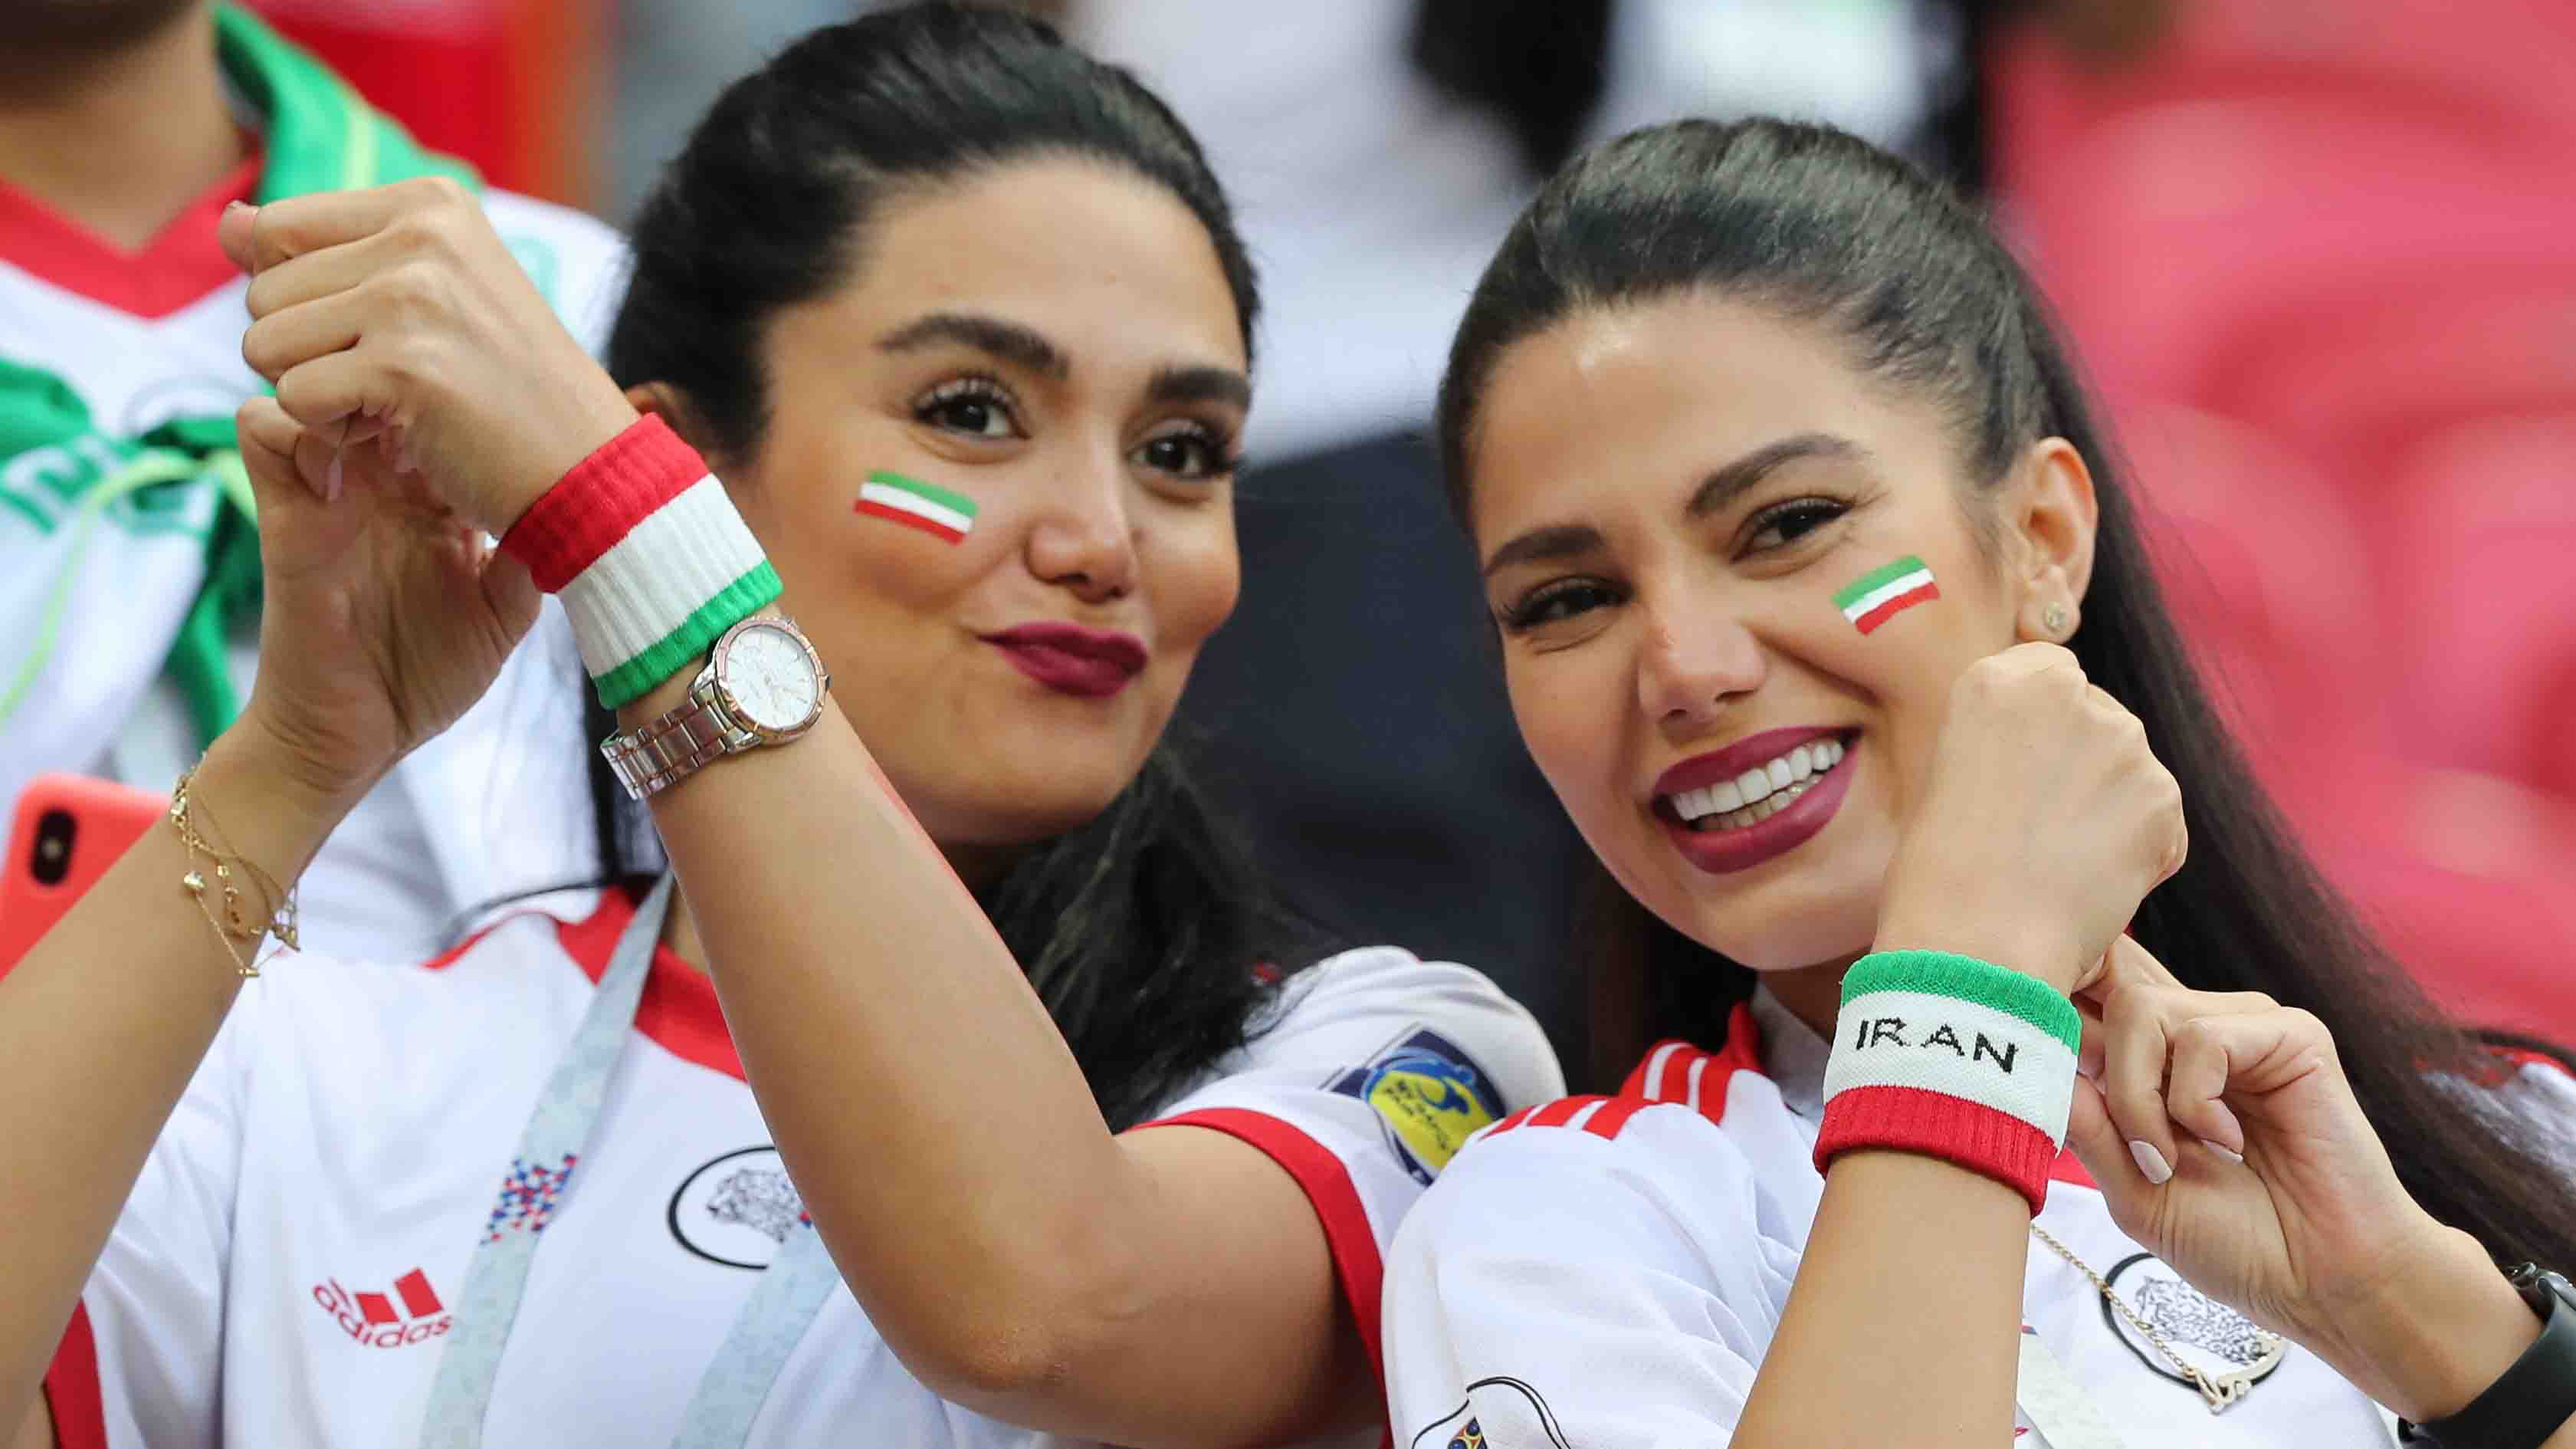 El Sumario - En los últimos tiempos se han generado protestas a nivel nacional e internacional para exigir el libre pase a los estadios de las mujeres en Irán